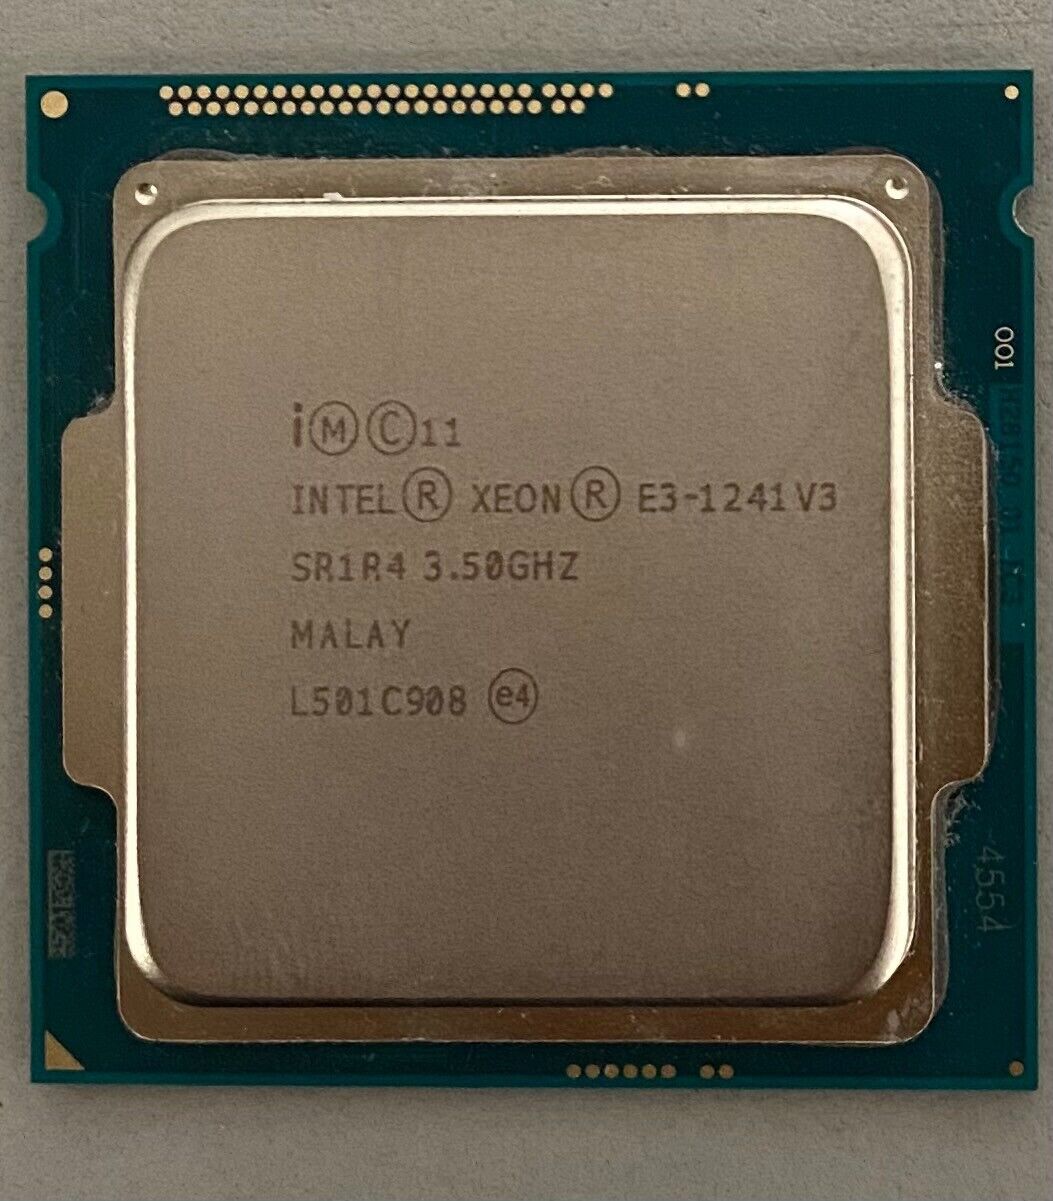 Intel Xeon E3-1241 V3 3.50GHz 8MB LGA-1150 Quad-Core SR1R4 CPU Processor